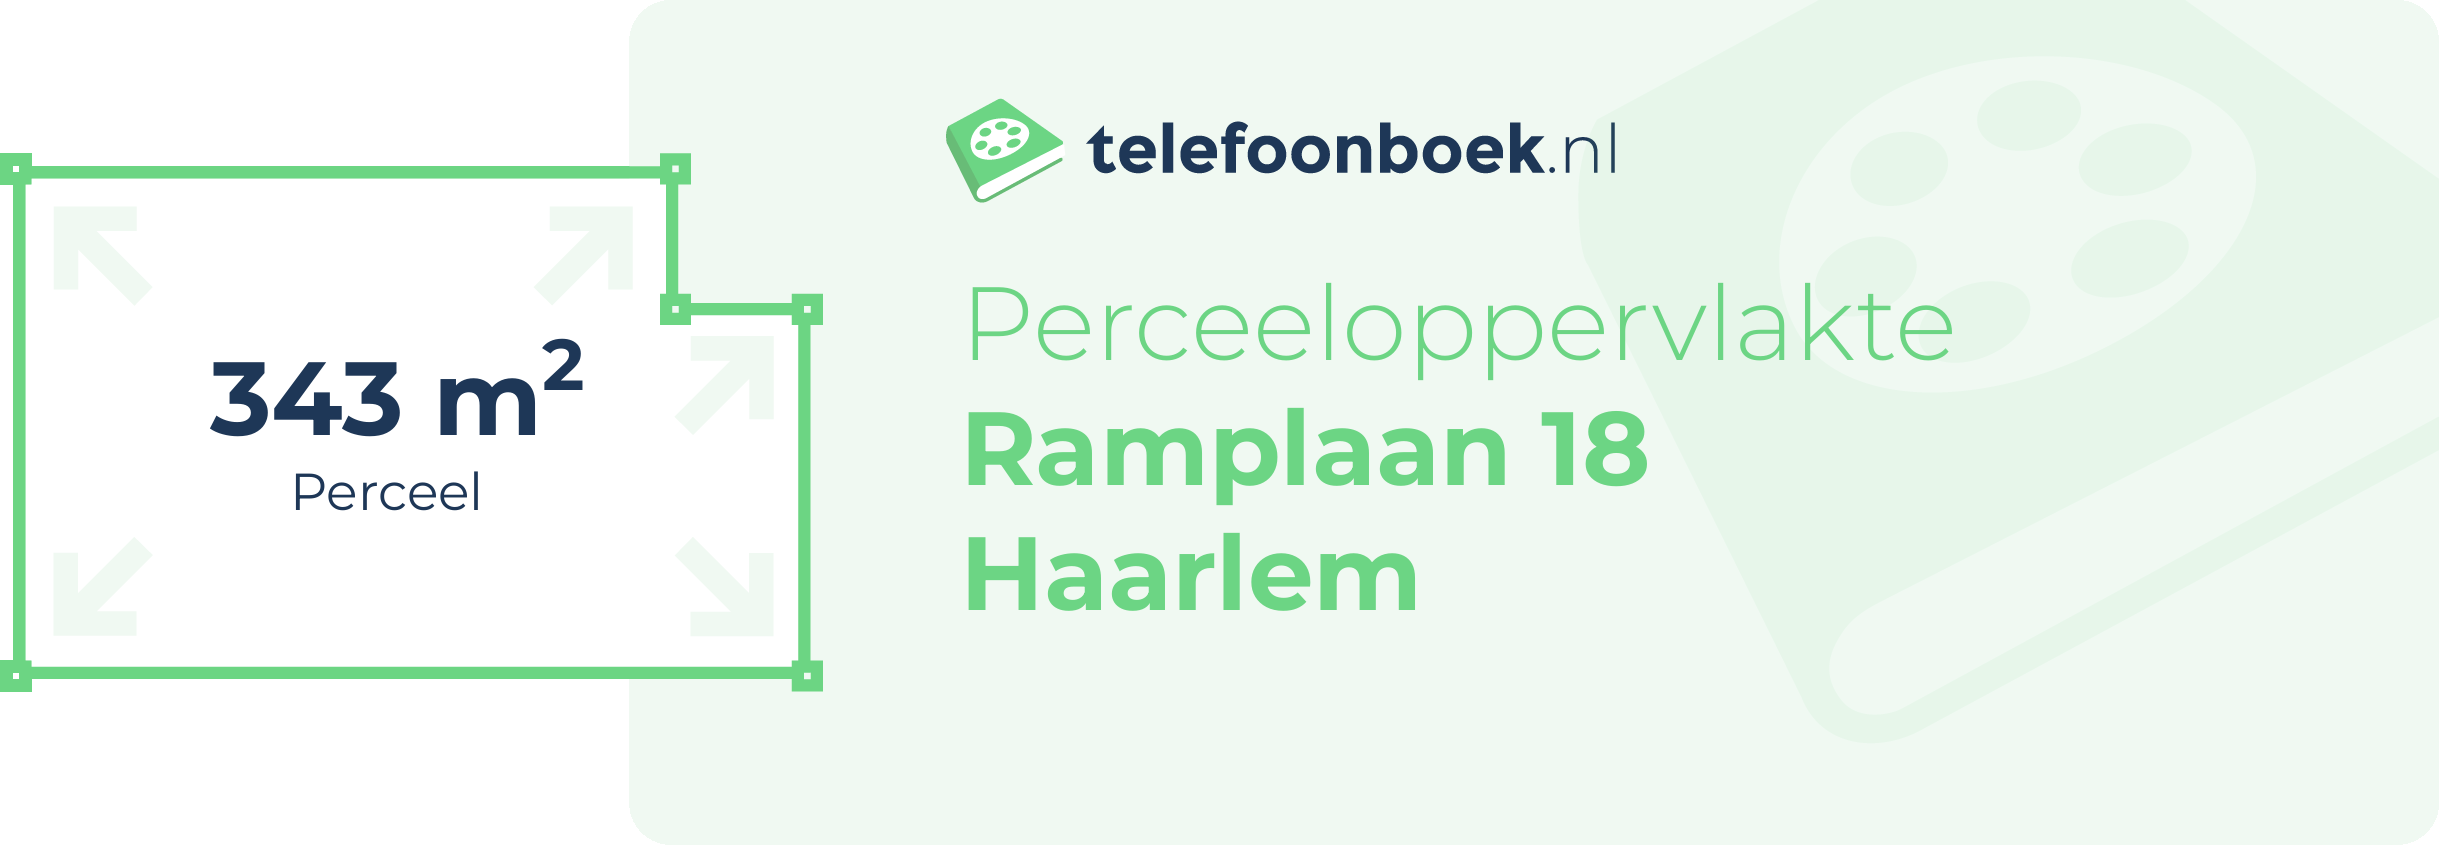 Perceeloppervlakte Ramplaan 18 Haarlem